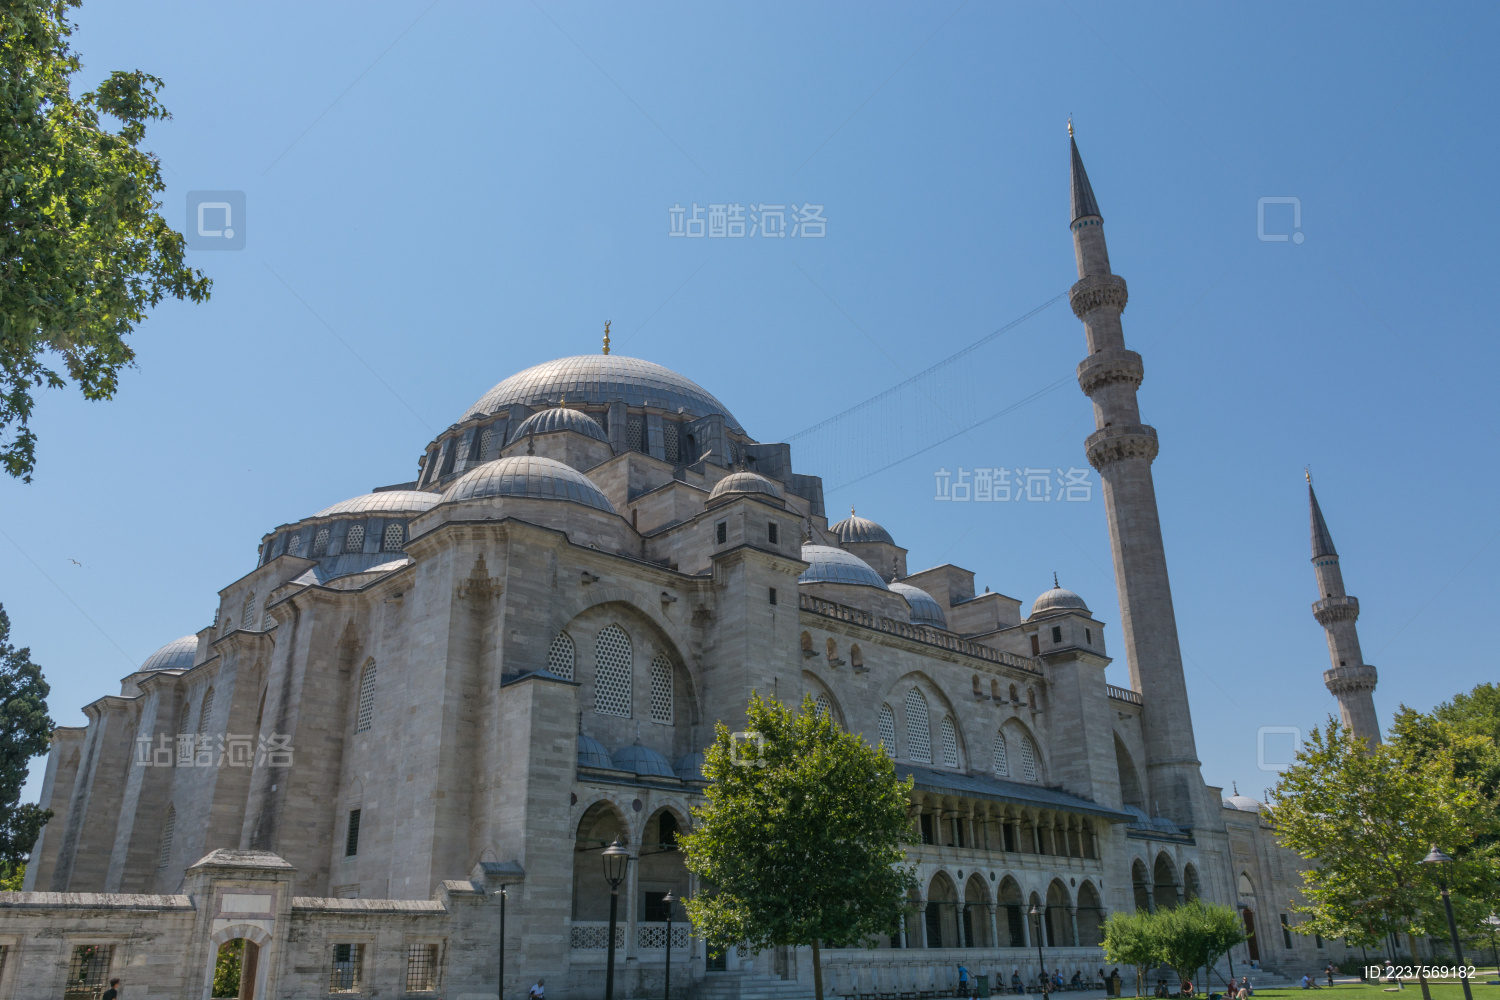 伊斯坦布尔苏莱曼清真寺攻略,伊斯坦布尔苏莱曼清真寺门票/游玩攻略/地址/图片/门票价格【携程攻略】